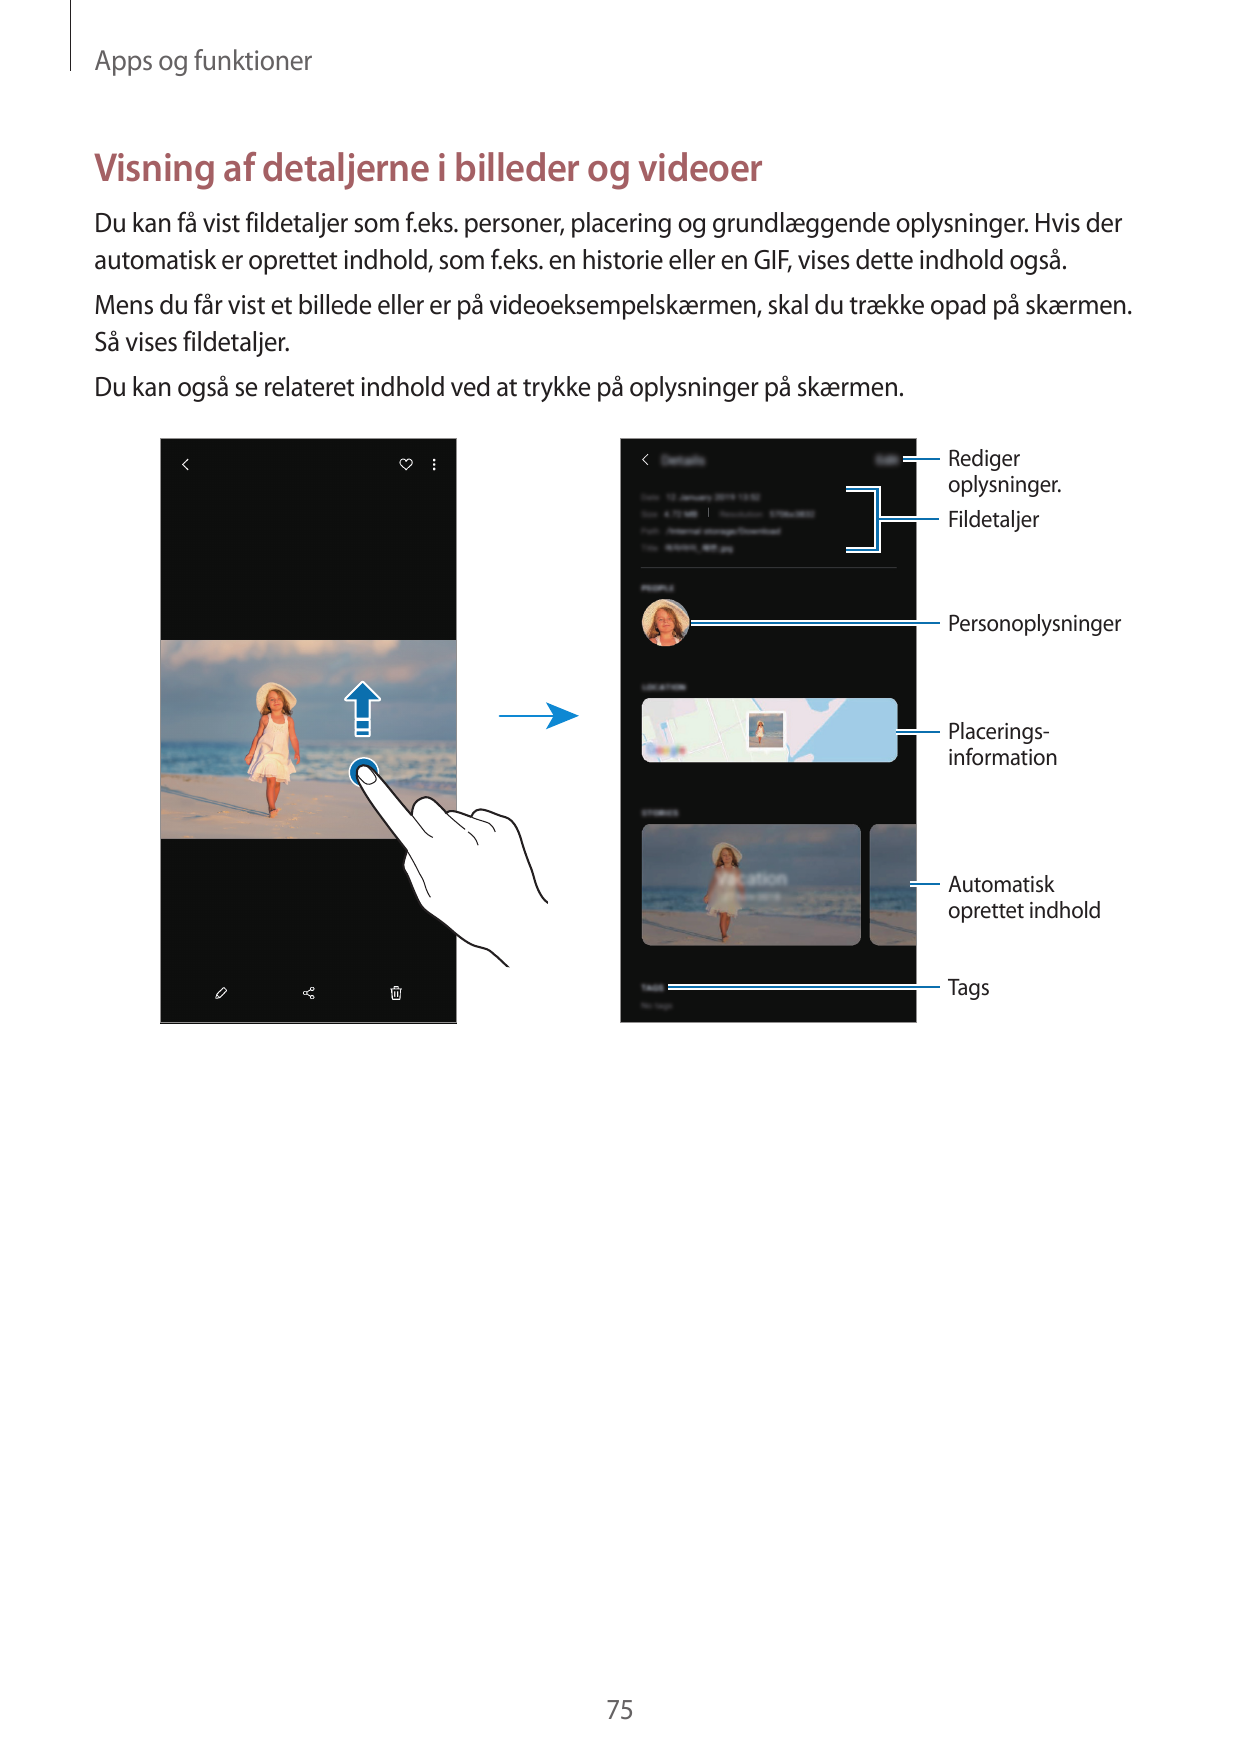 Apps og funktionerVisning af detaljerne i billeder og videoerDu kan få vist fildetaljer som f.eks. personer, placering og grundl